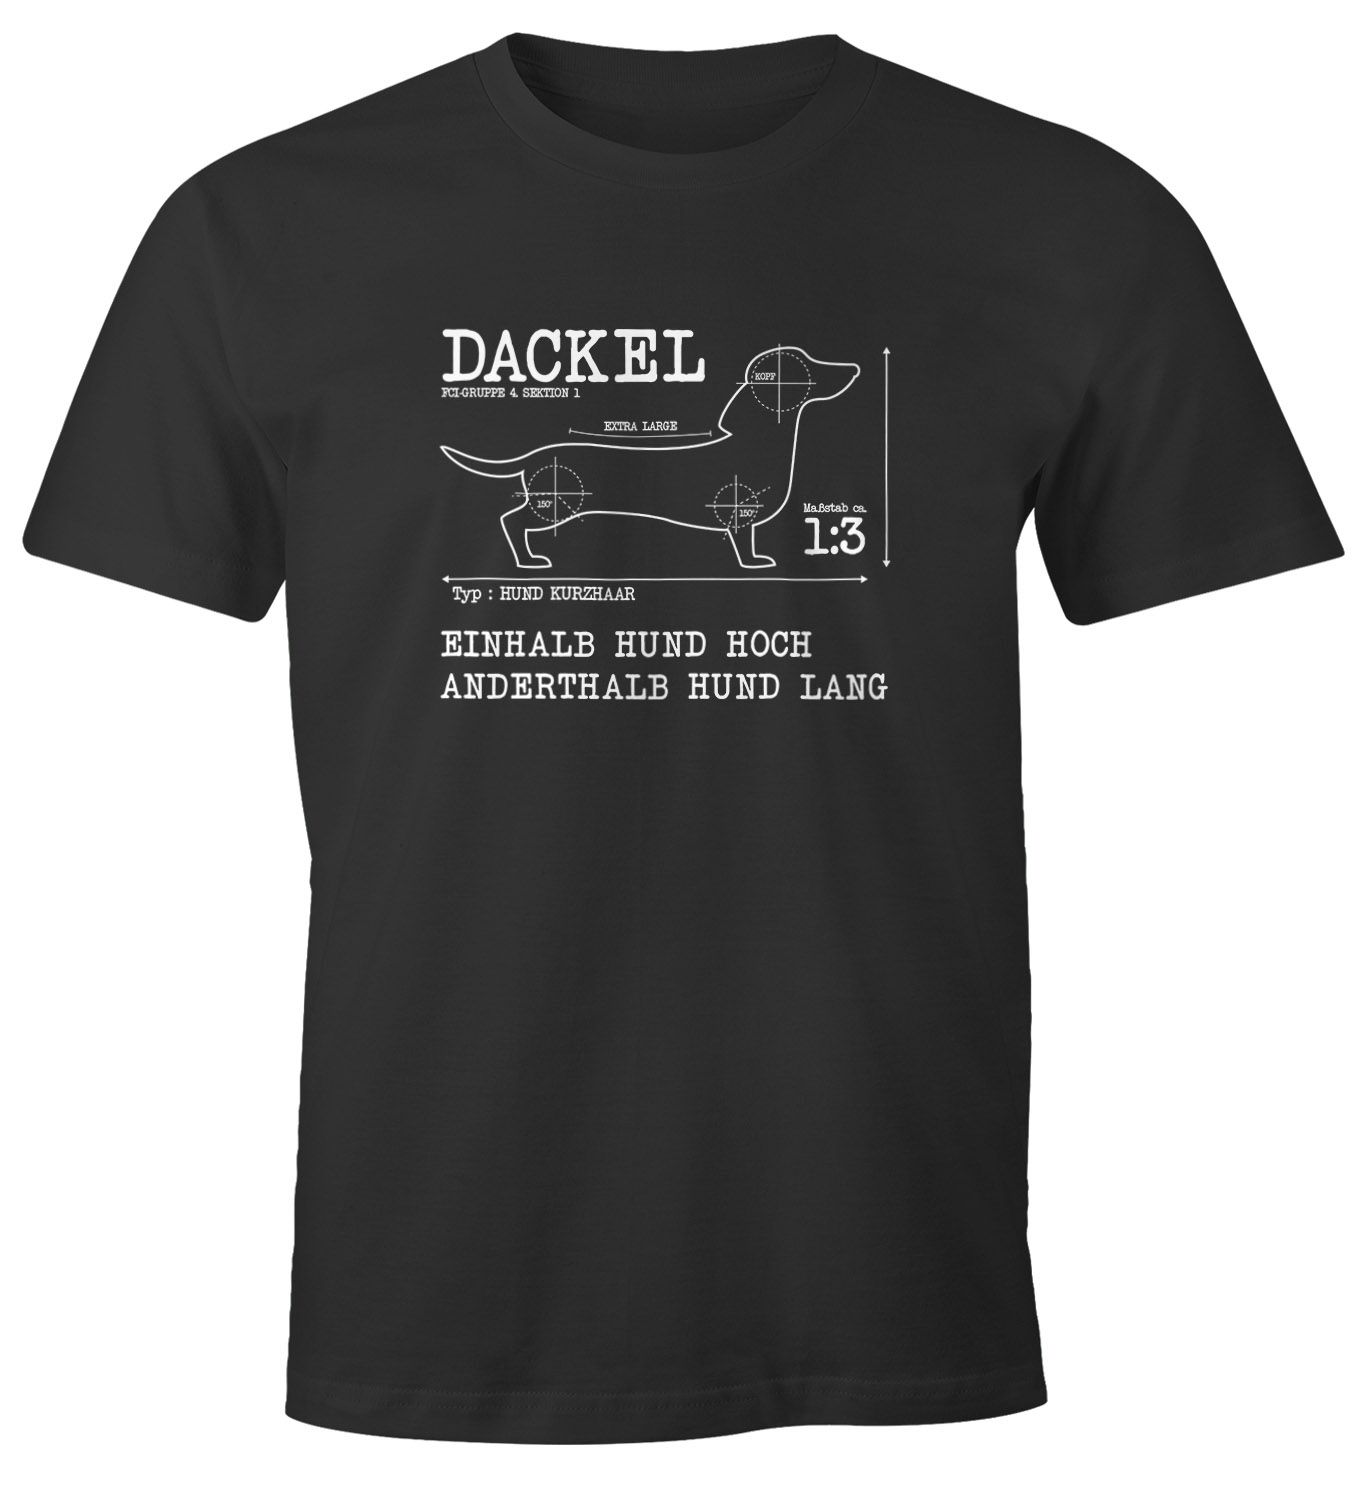 Die Besten Dackel T Shirts Online Bestellen Spreadshirt